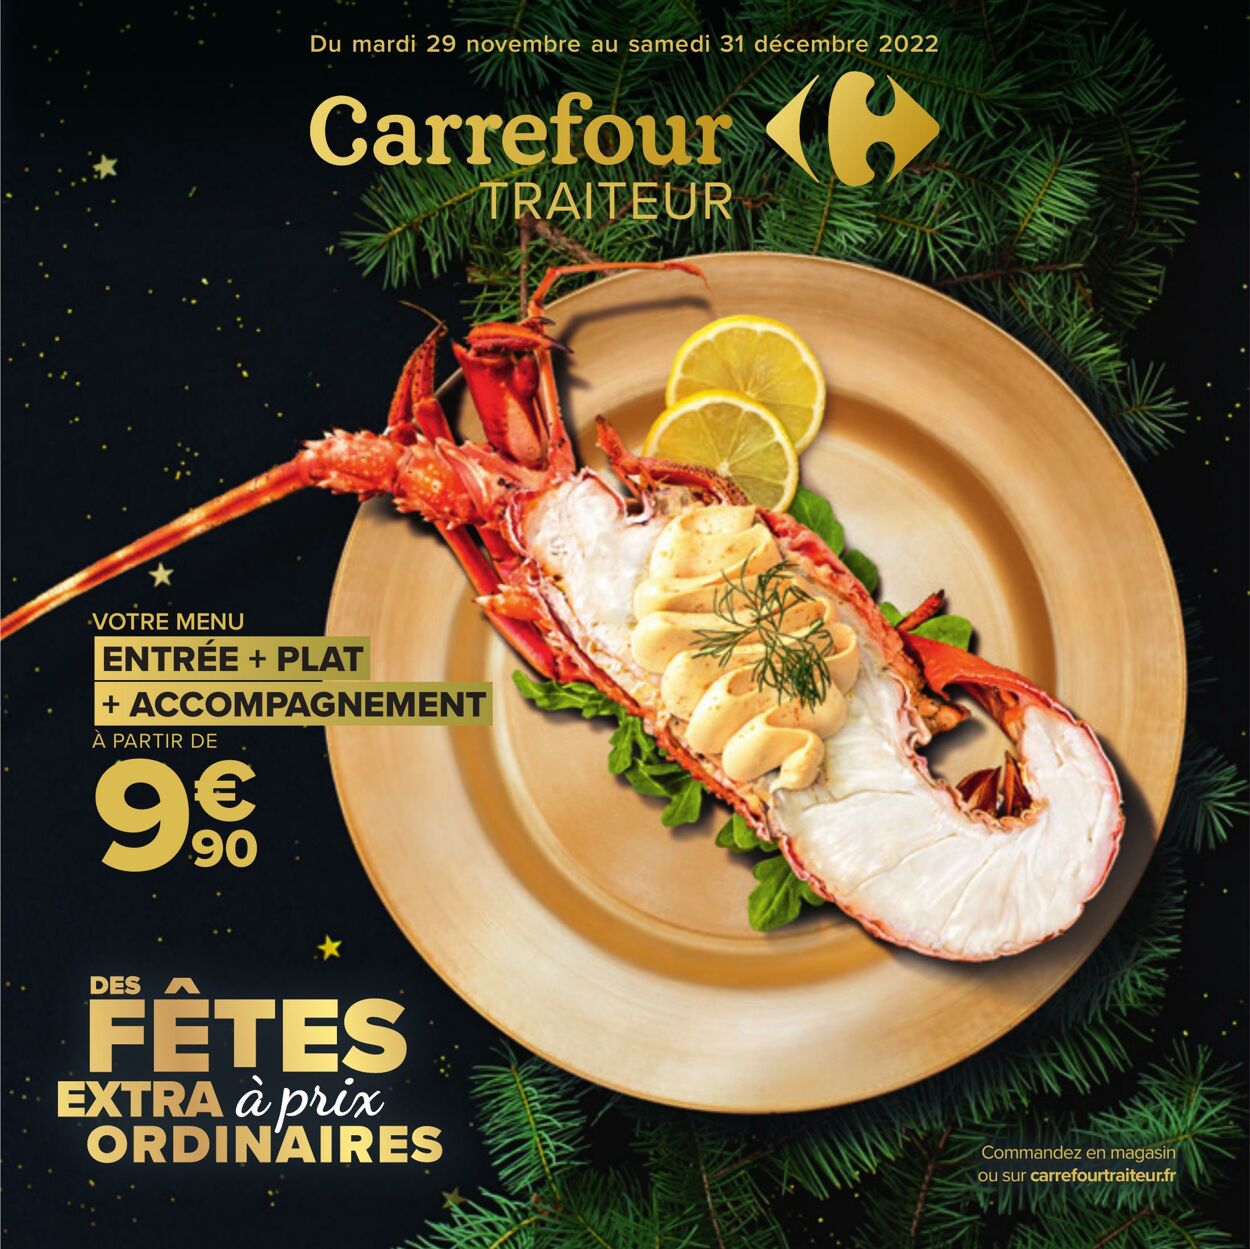 Catalogue Carrefour 29.11.2022-31.12.2022